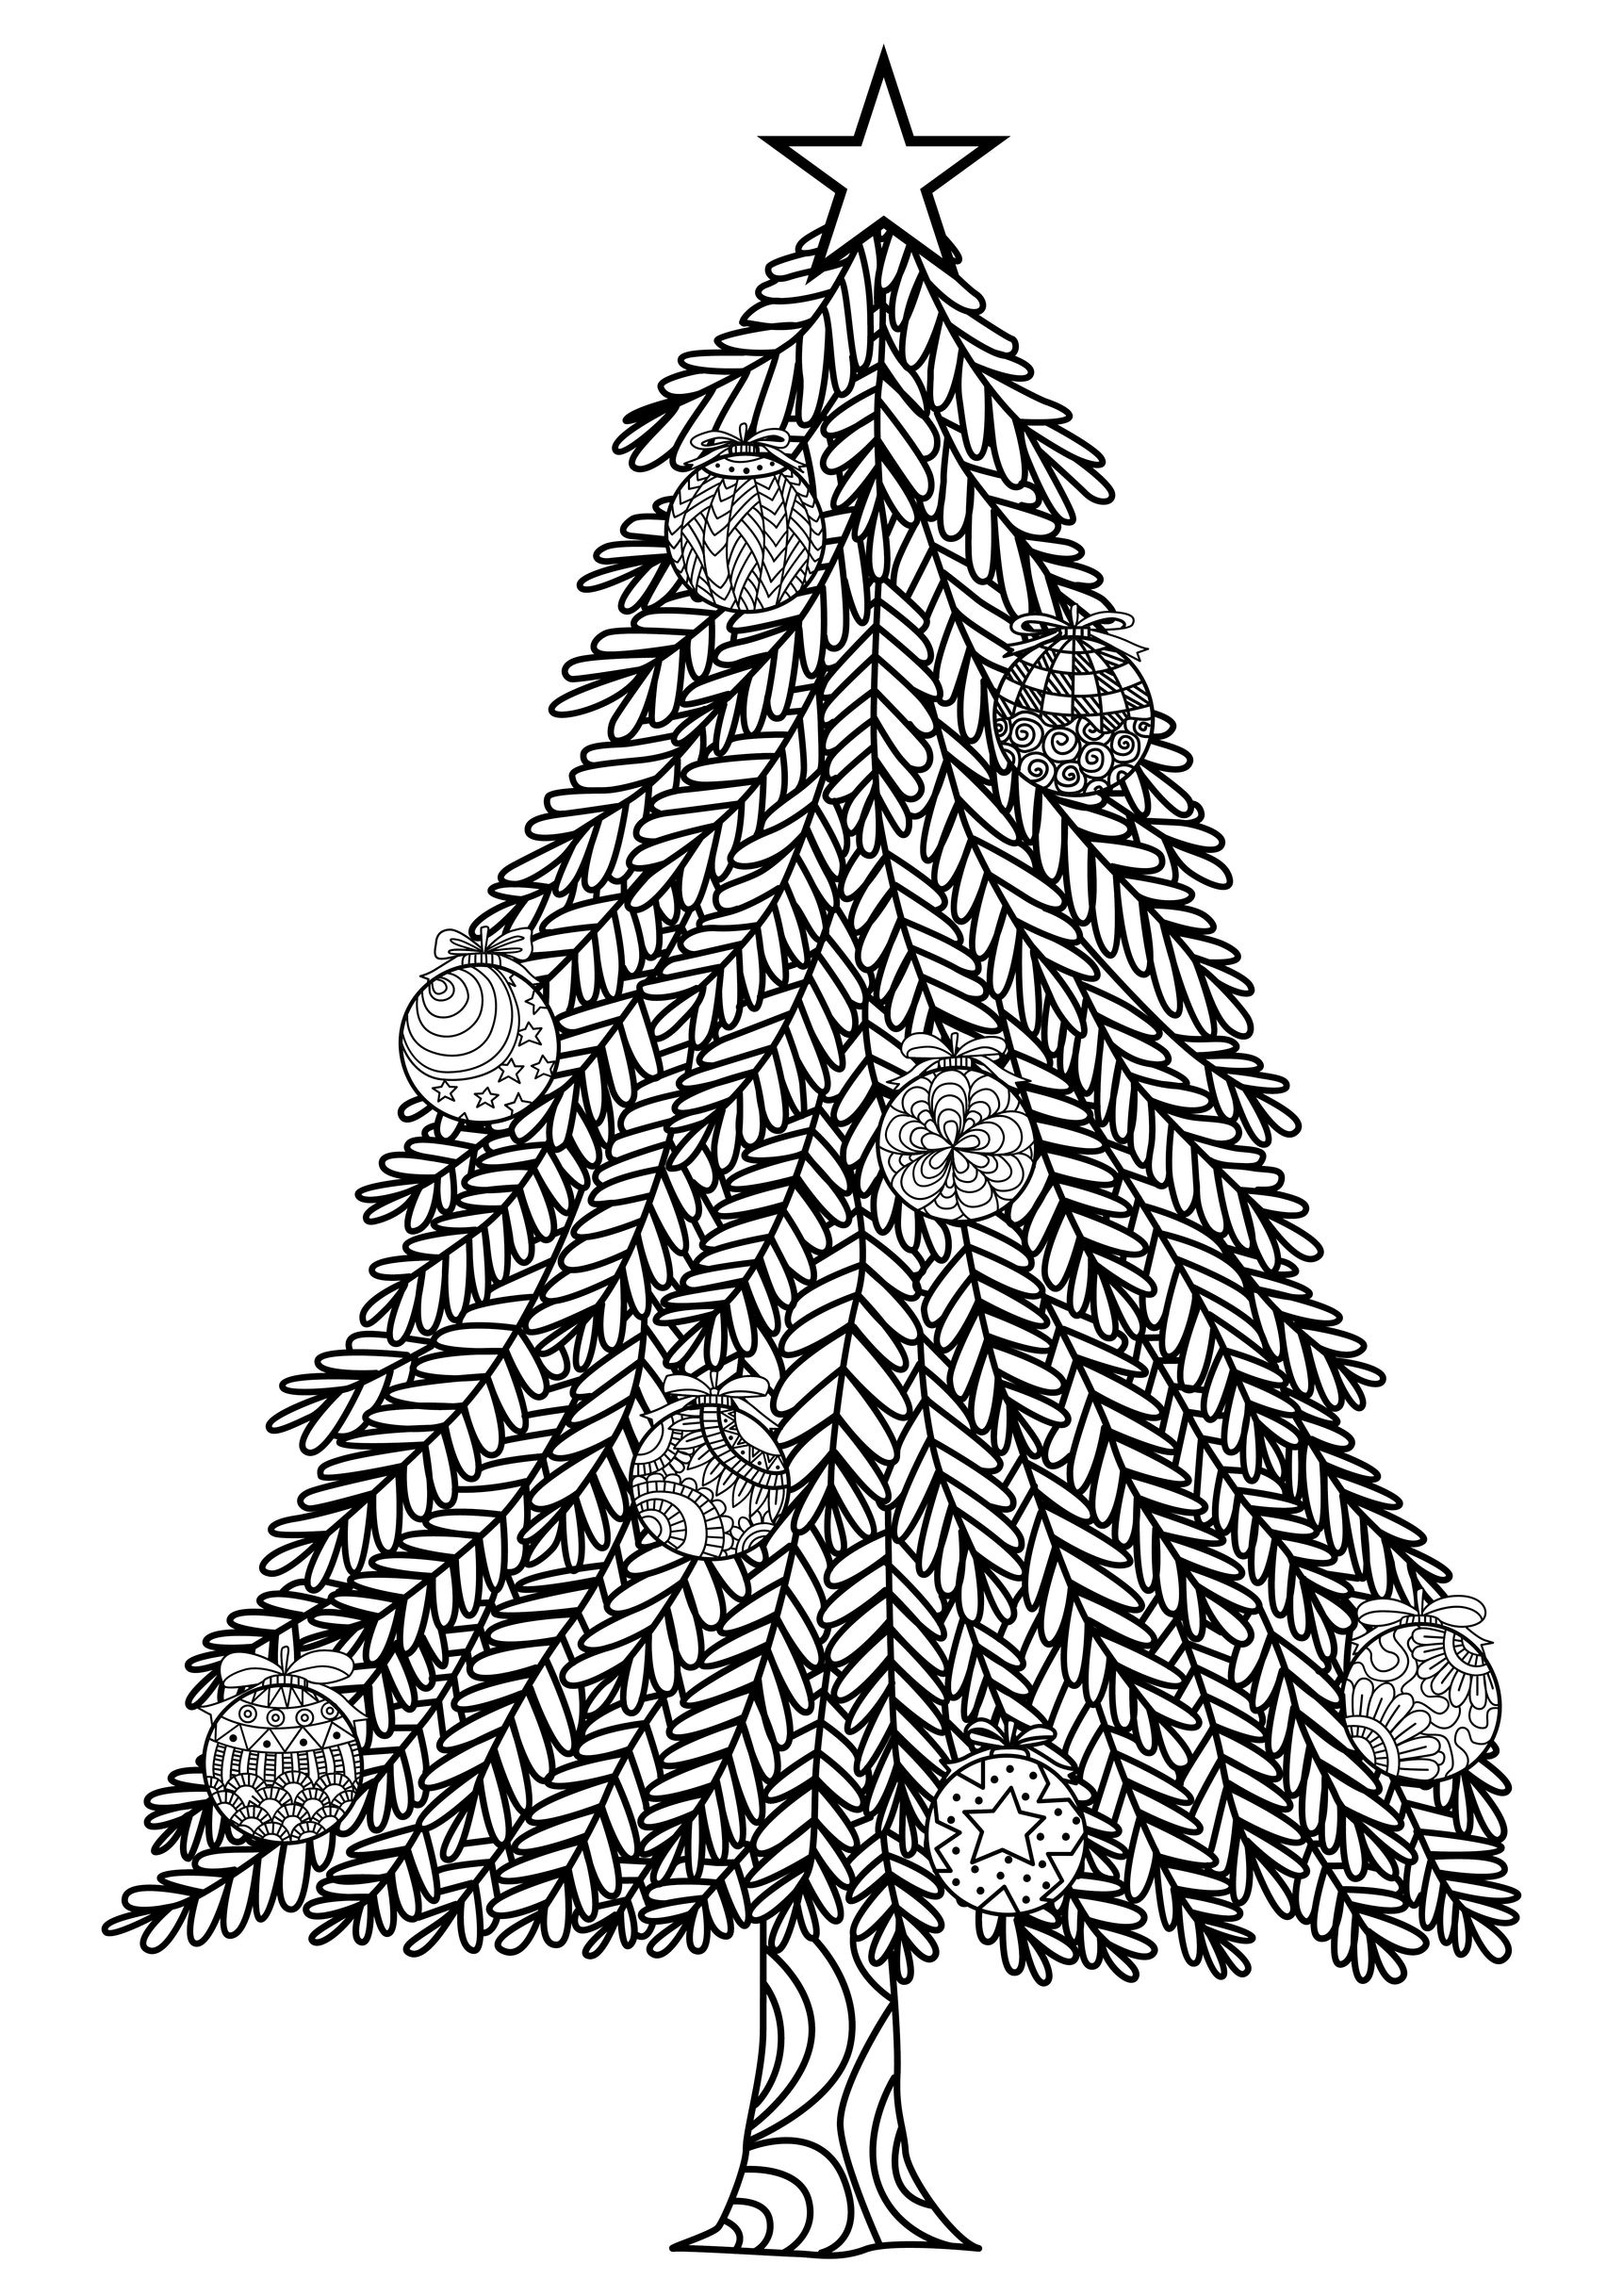 Einfacher Weihnachtsbaum, halten Sie Ihre grünen Marker bereit. Dieser Weihnachtsbaum Färbung Seite ist perfekt für diejenigen, die bereit sind, diesen Feiertag zu feiern sind.
